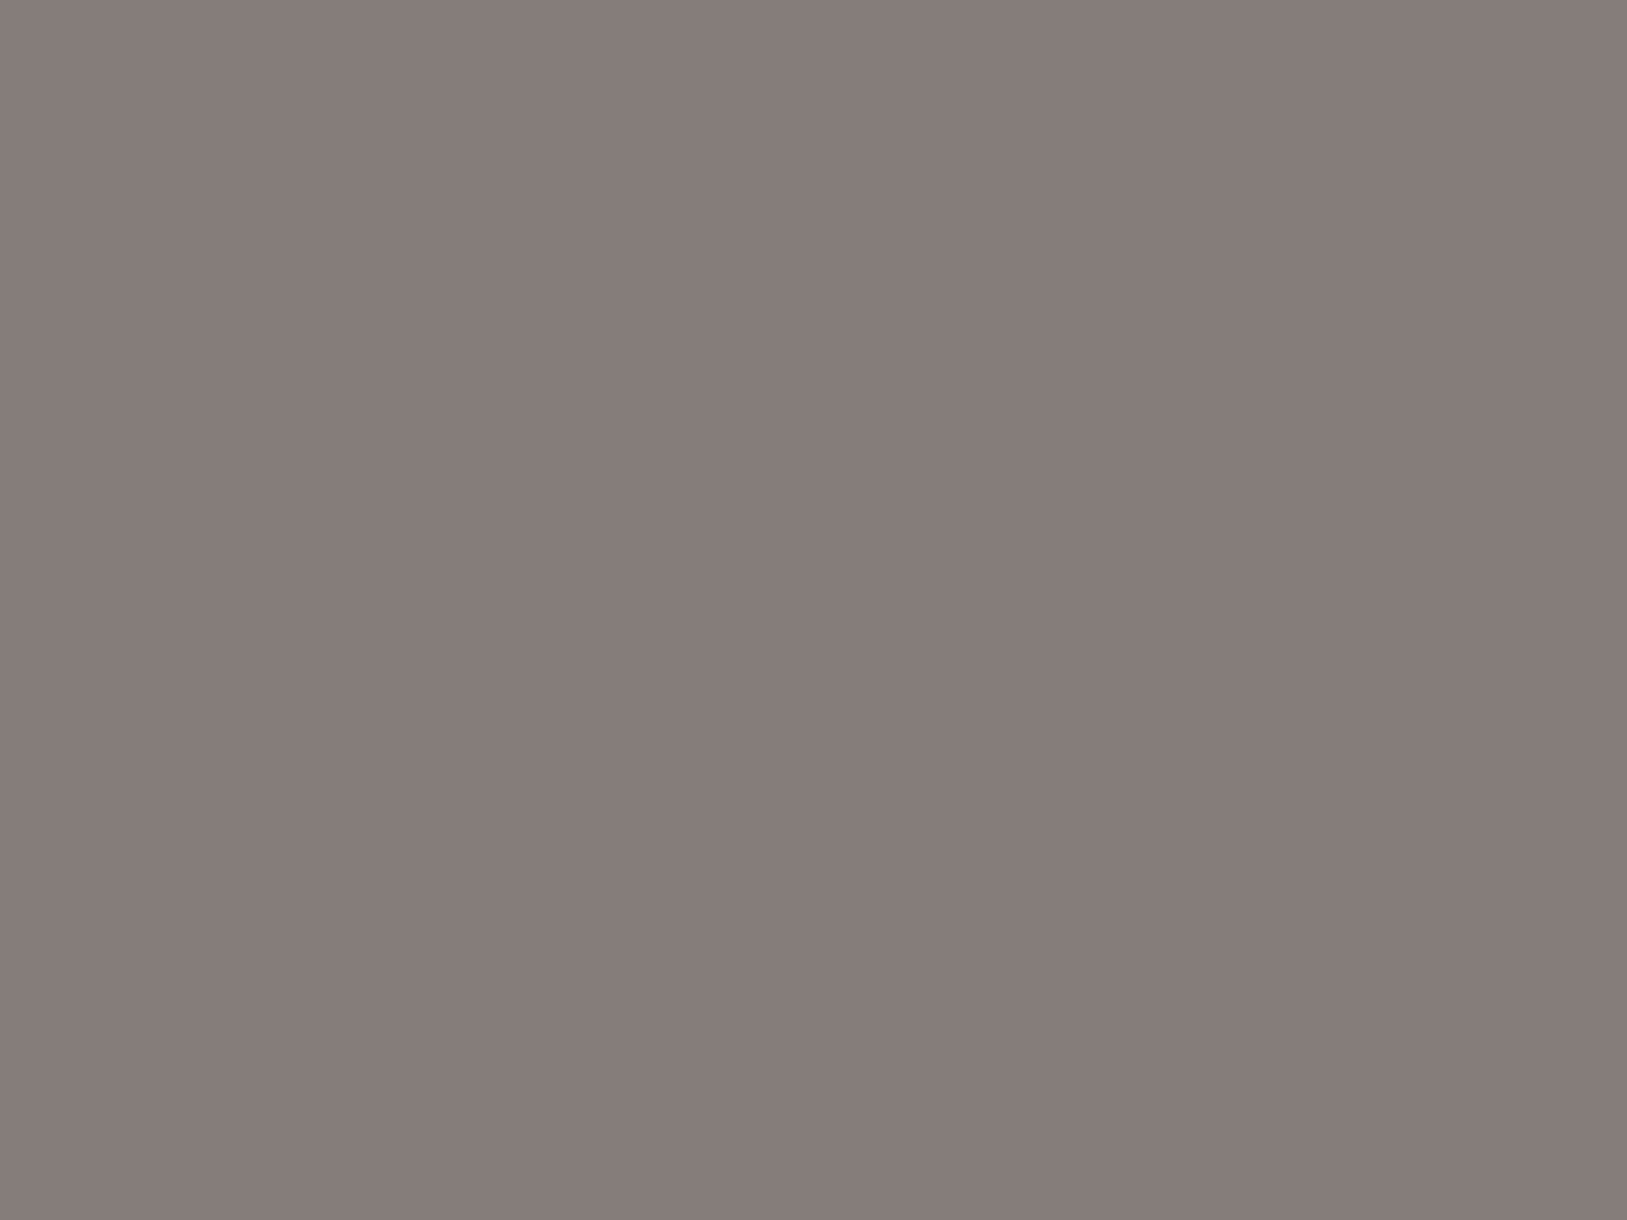 Николай Дубовский. Притихло (фрагмент). Оригинал. 1890. Государственный Русский музей, Санкт-Петербург